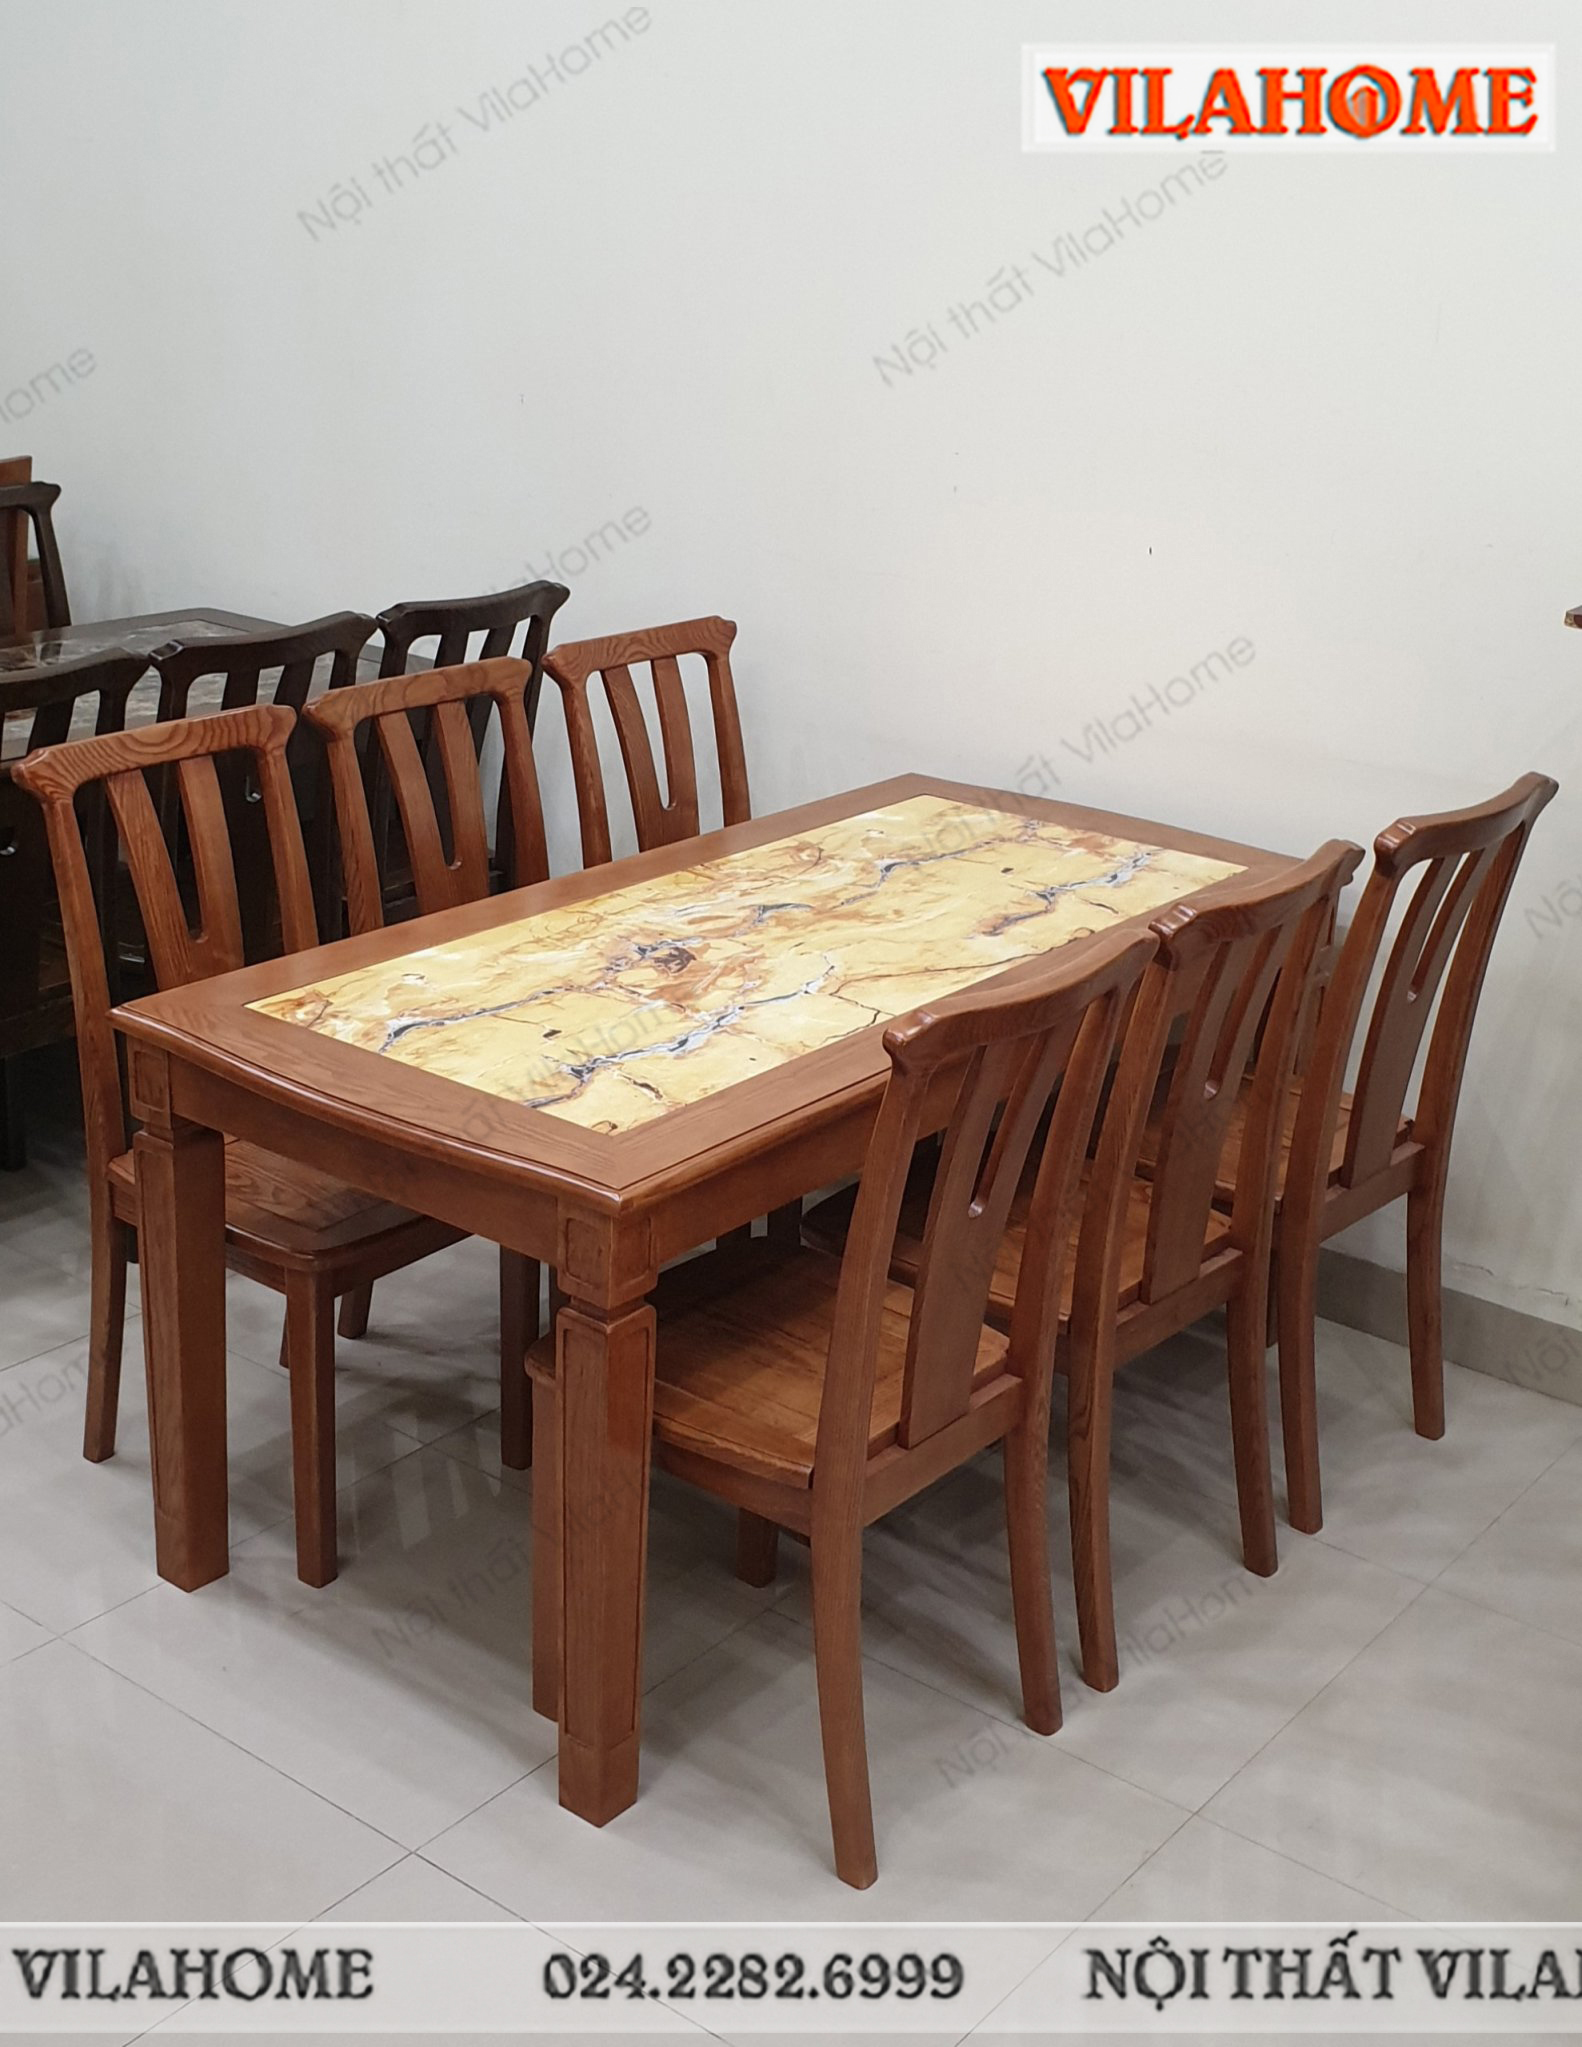 Bộ bàn ghế ăn gỗ tự nhiên Thái Nguyên là lựa chọn tuyệt vời cho những ai yêu thích thiết kế nội thất mang tính tinh tế và công nghệ. Với chất liệu gỗ tự nhiên, sản phẩm này đem đến sự ấm cúng và gần gũi cho không gian phòng ăn của bạn.